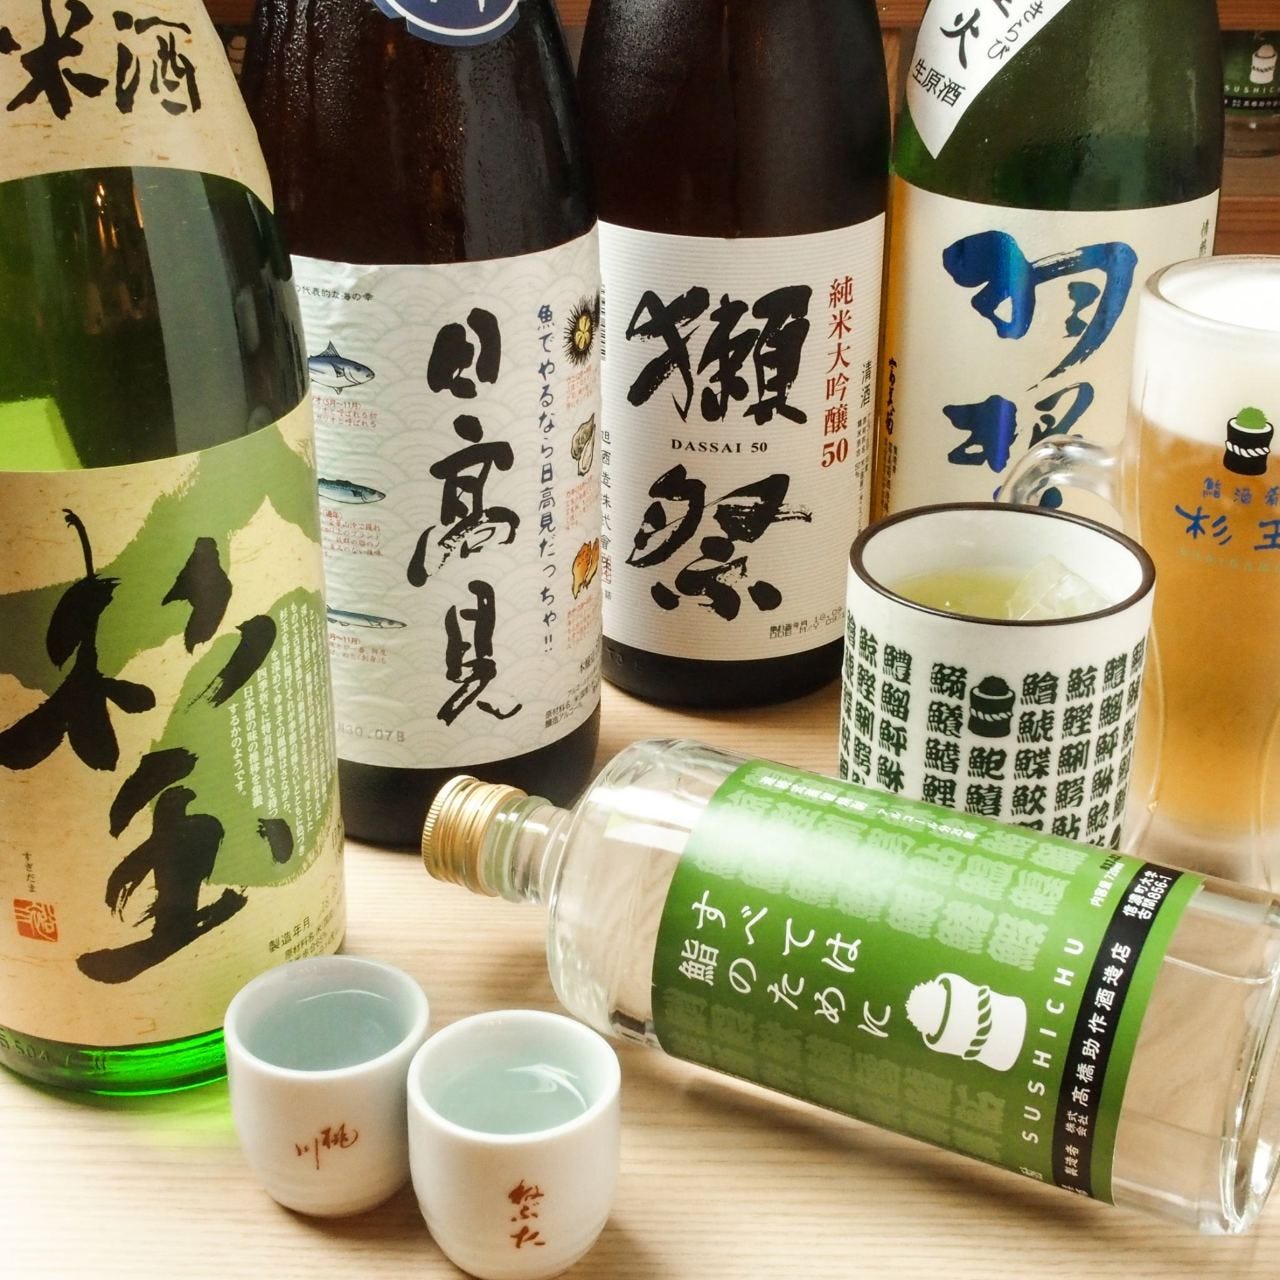 鮨・酒・肴 杉玉 千葉駅東口